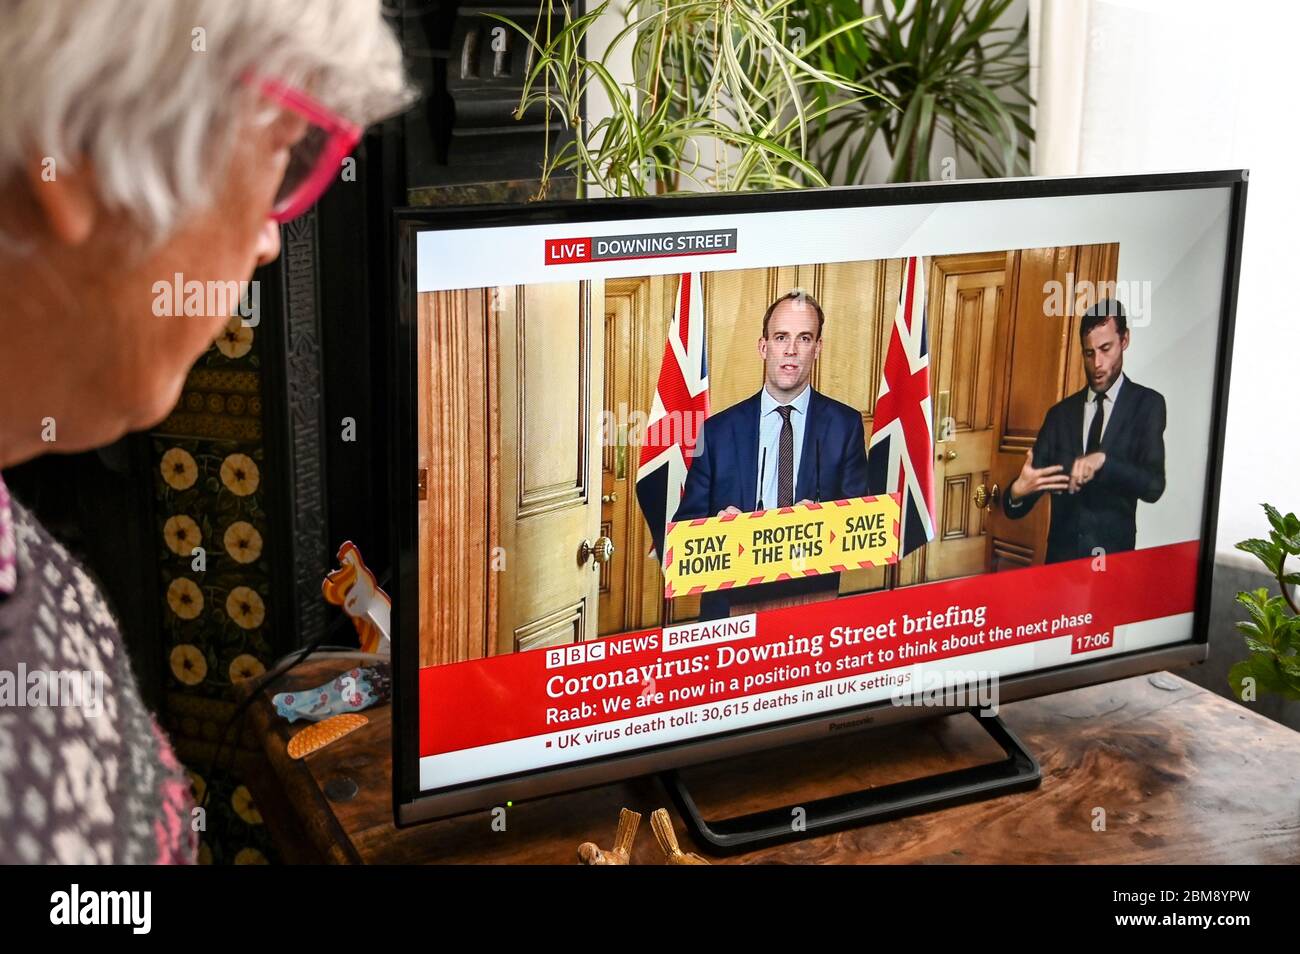 Dominic Raab donne le briefing quotidien télévisé du coronavirus Downing Street, regardé par un spectateur. Bannière « domicile, protéger le NHS, sauver des vies ». Banque D'Images